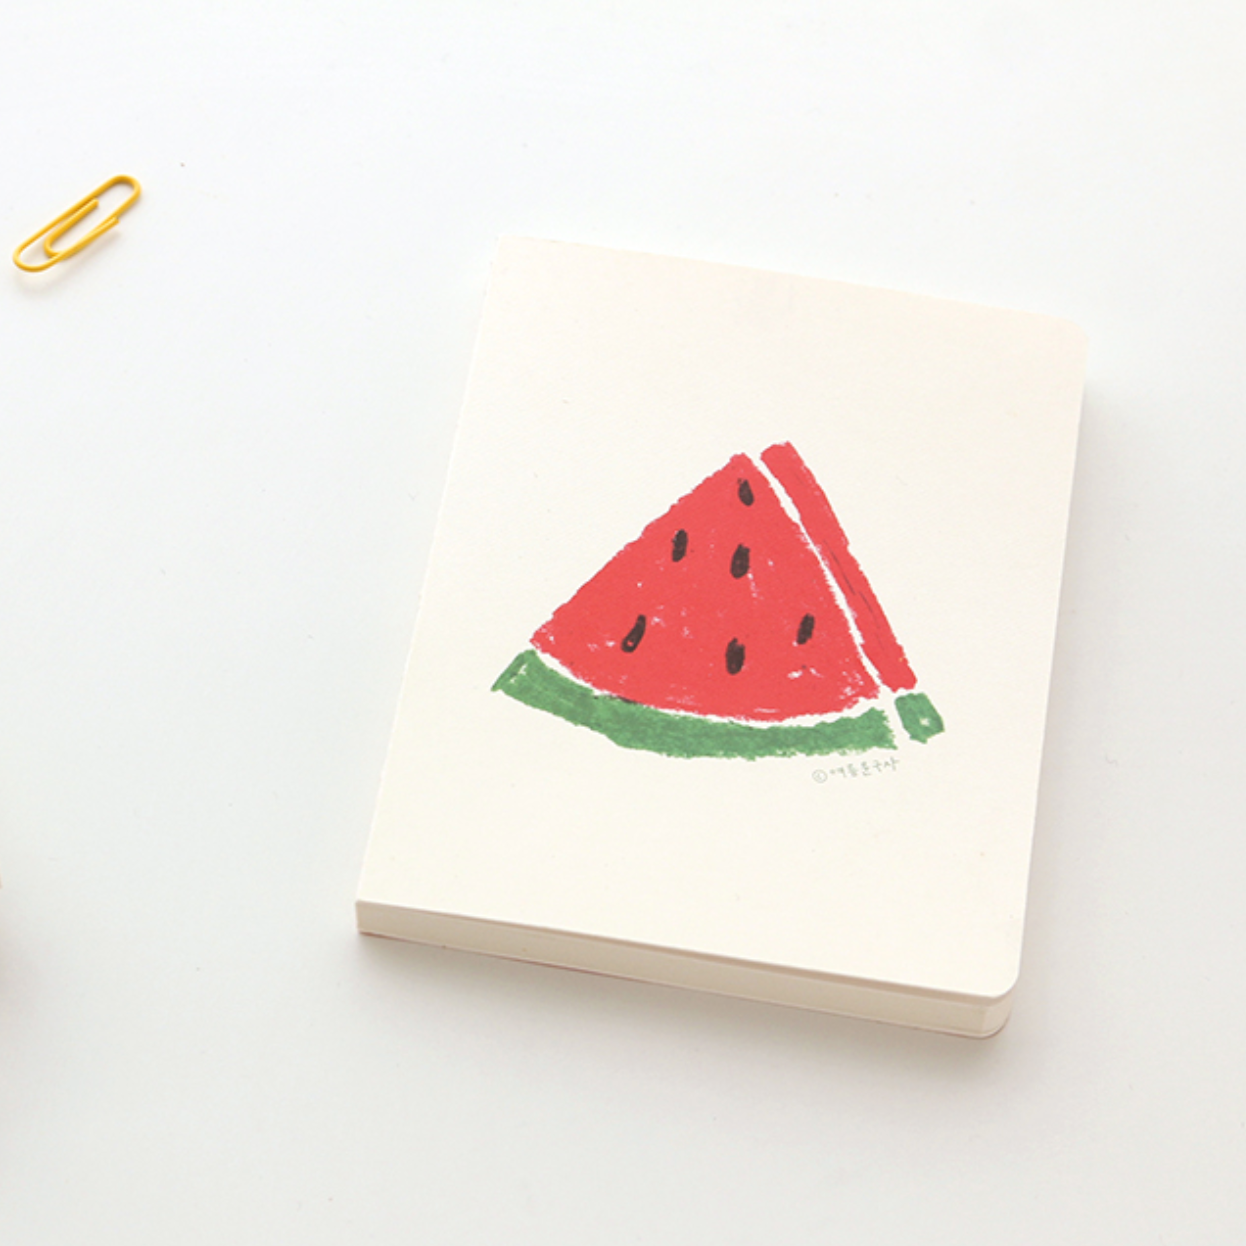 Watermelon Sketchbook